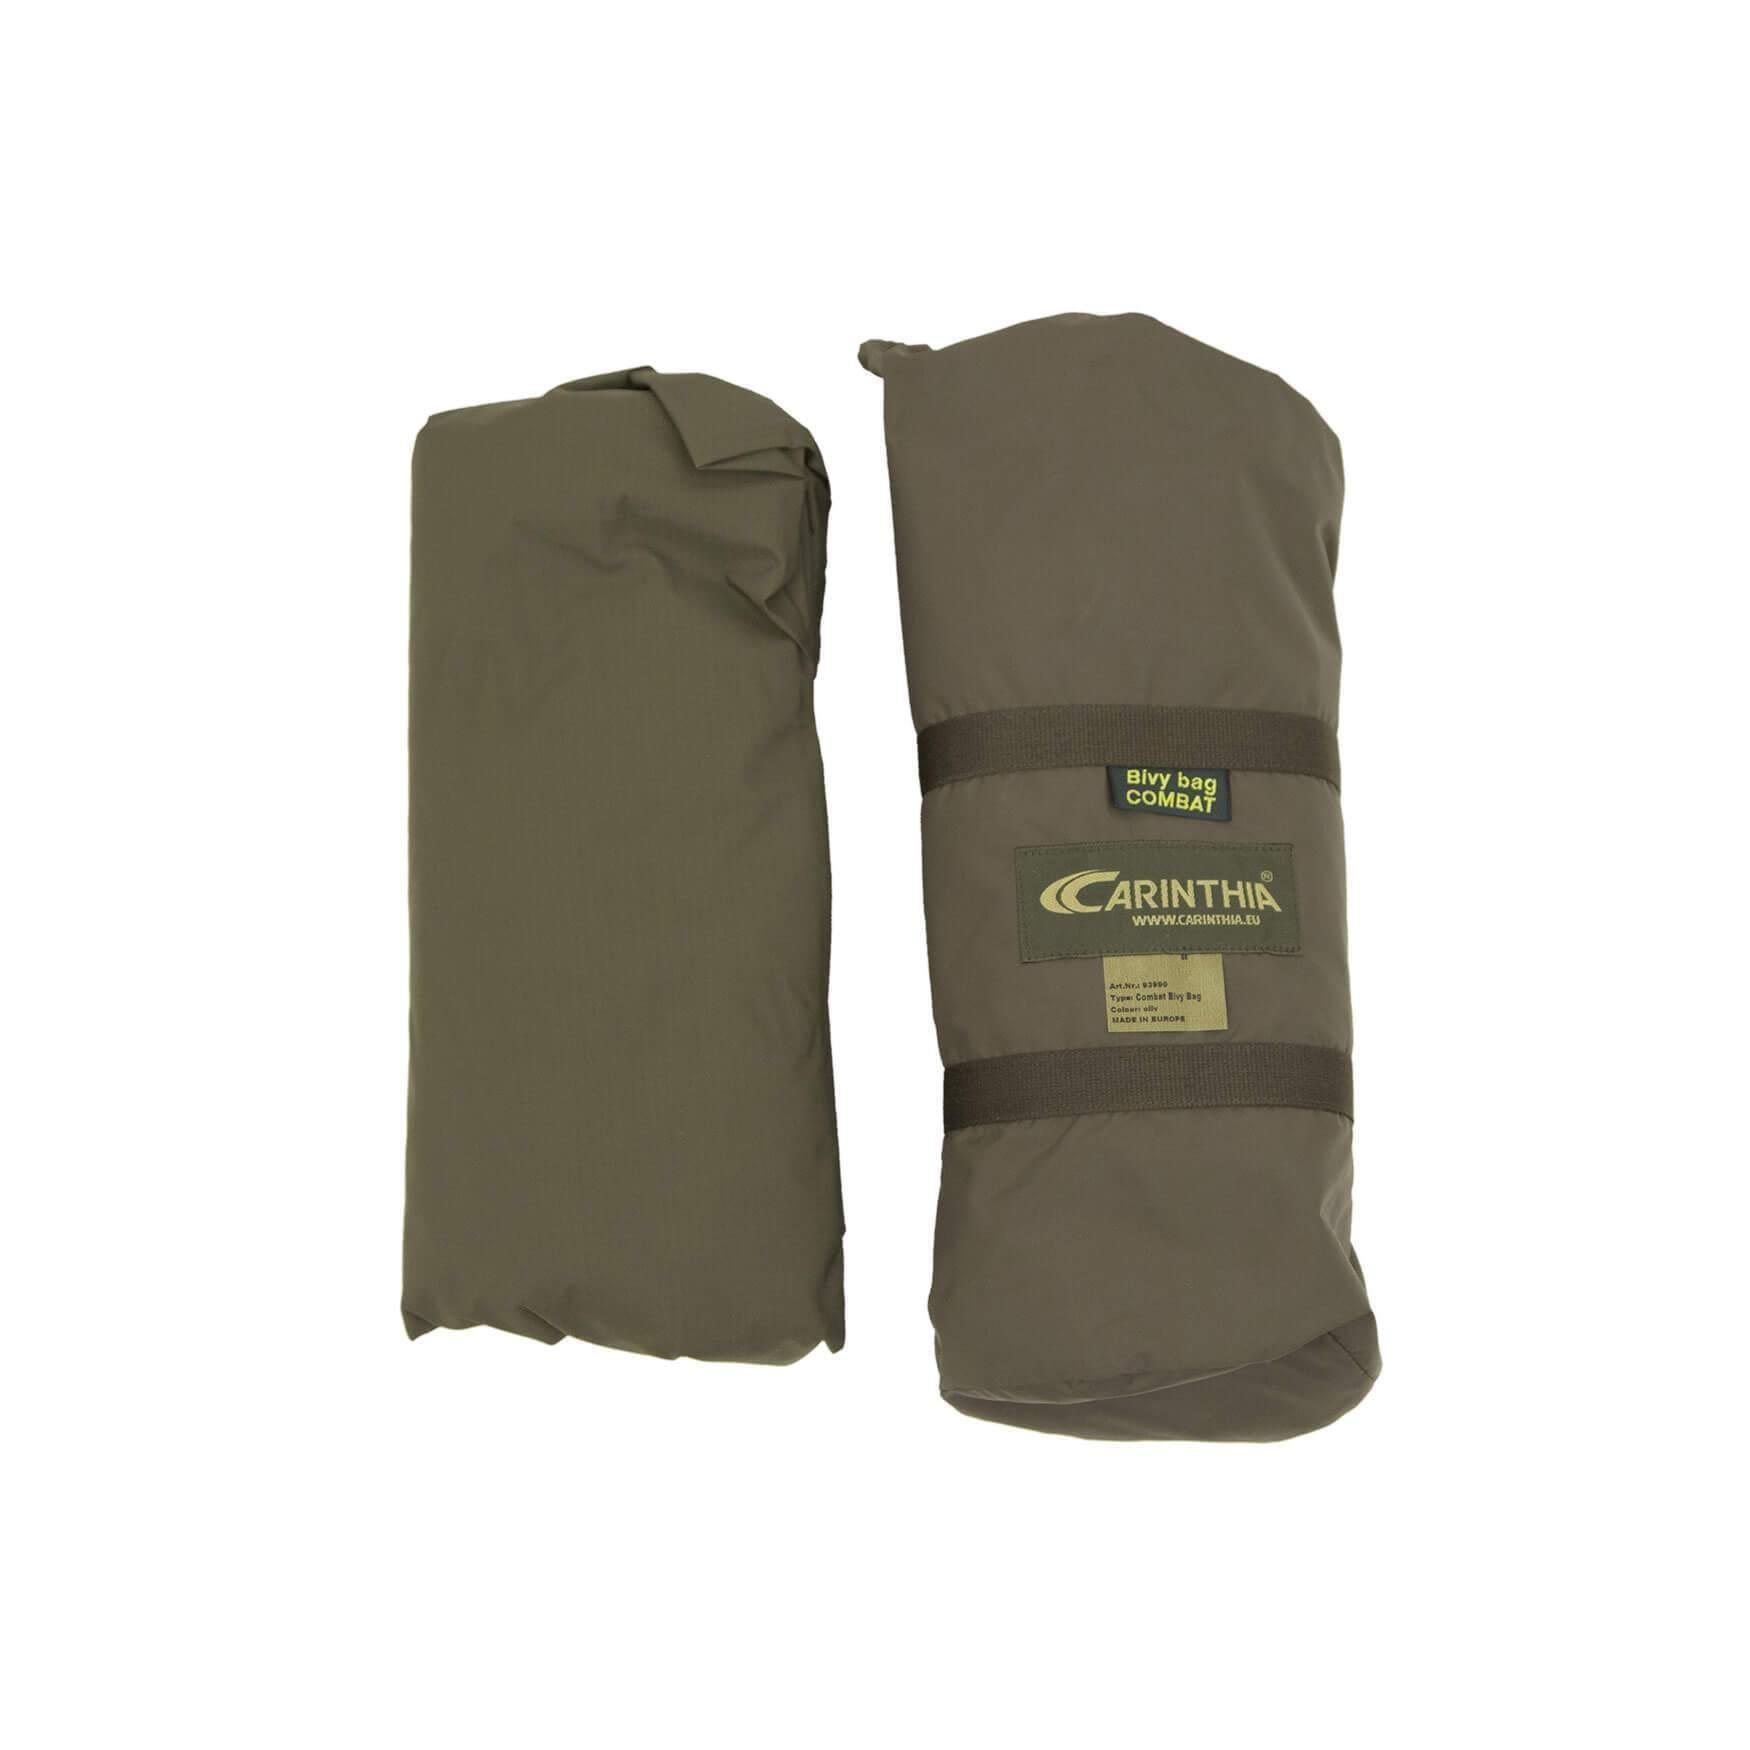 Carinthia Combat Bivy Bag (Bivy bags) från Carinthia. | TacNGear - Utrustning för polis och militär och outdoor.